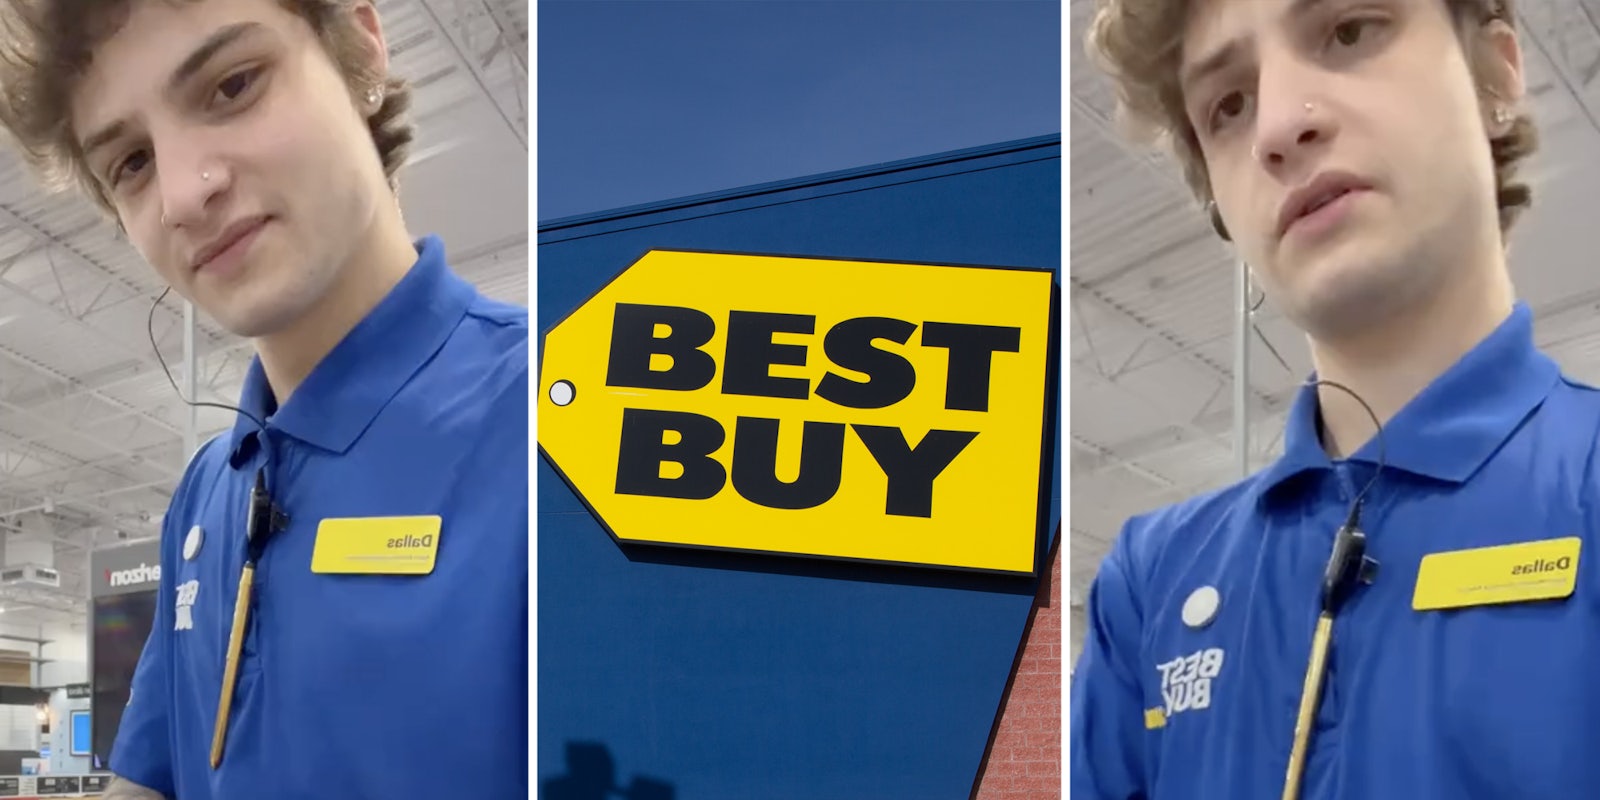 Best Buy employee(l+r), Best Buy storefront(c)